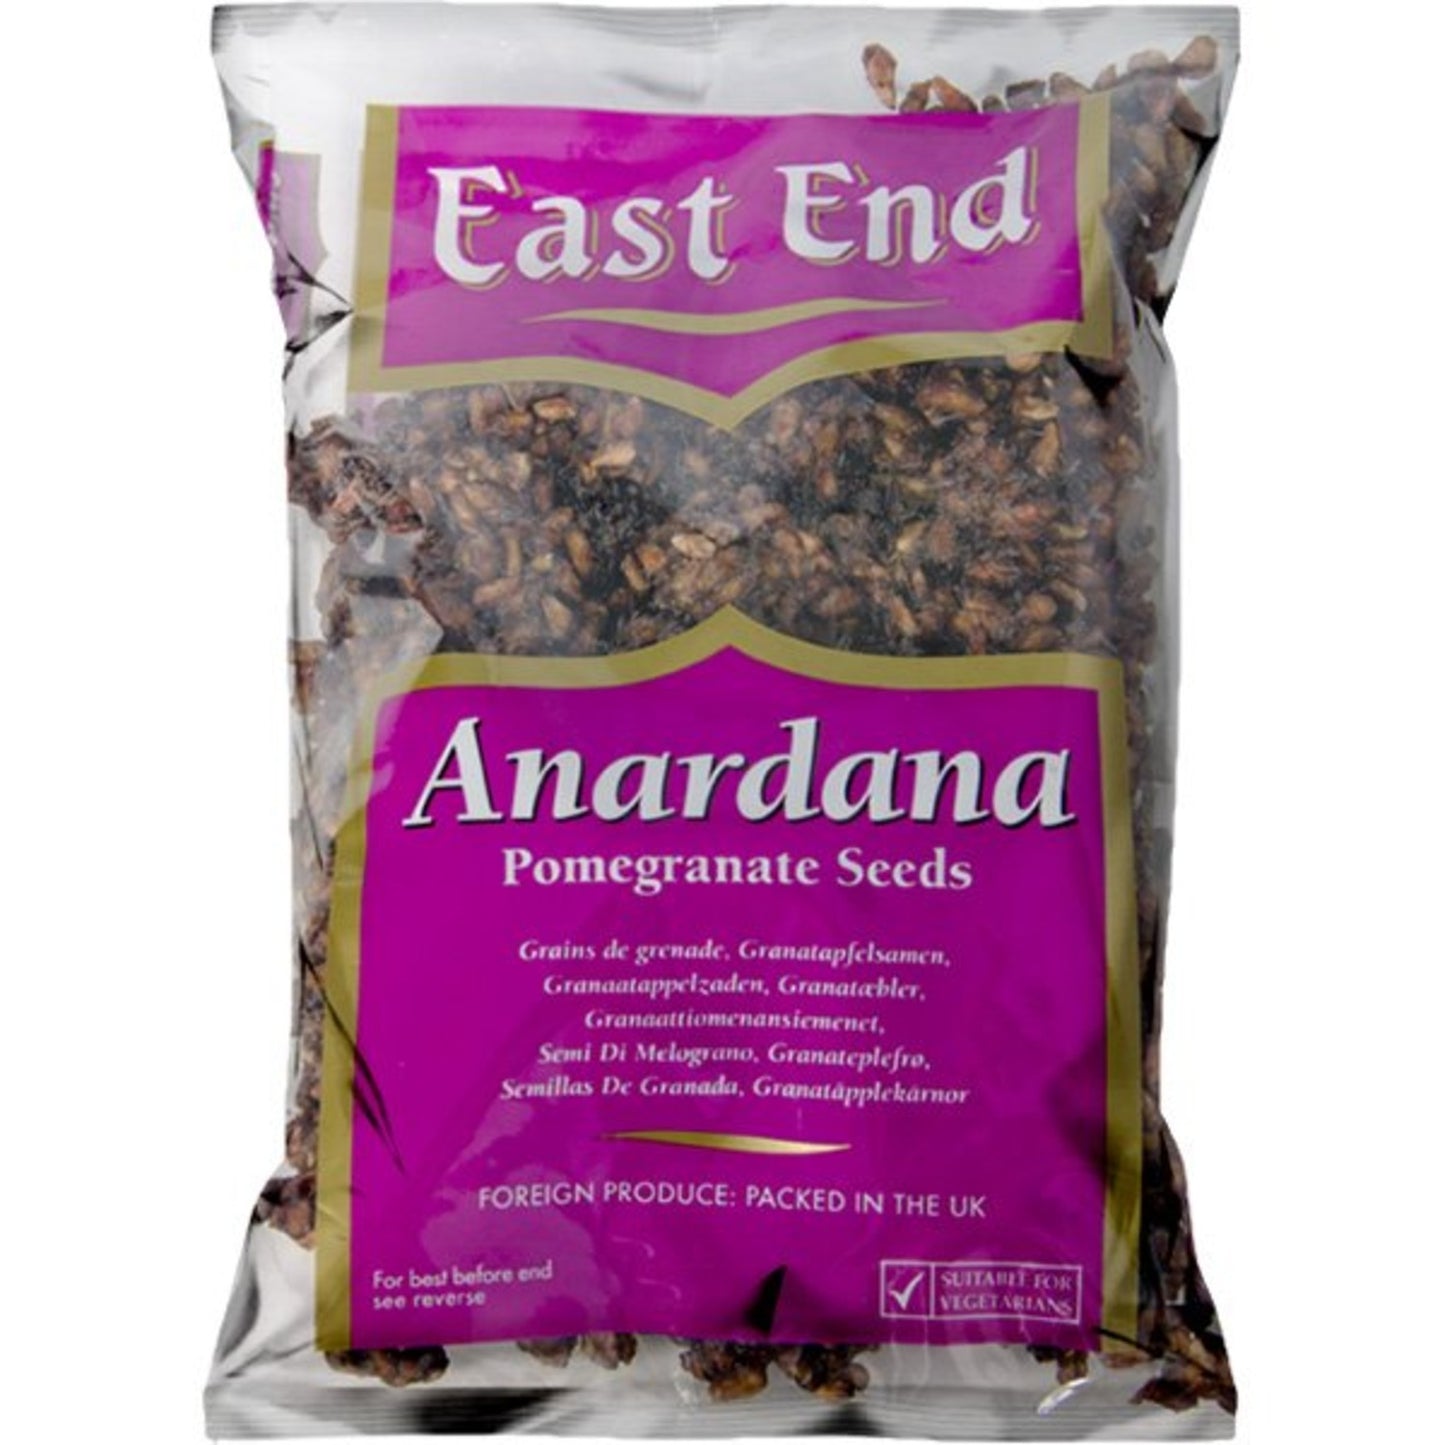 East End Anardana (Pomegranate Seeds) 200g